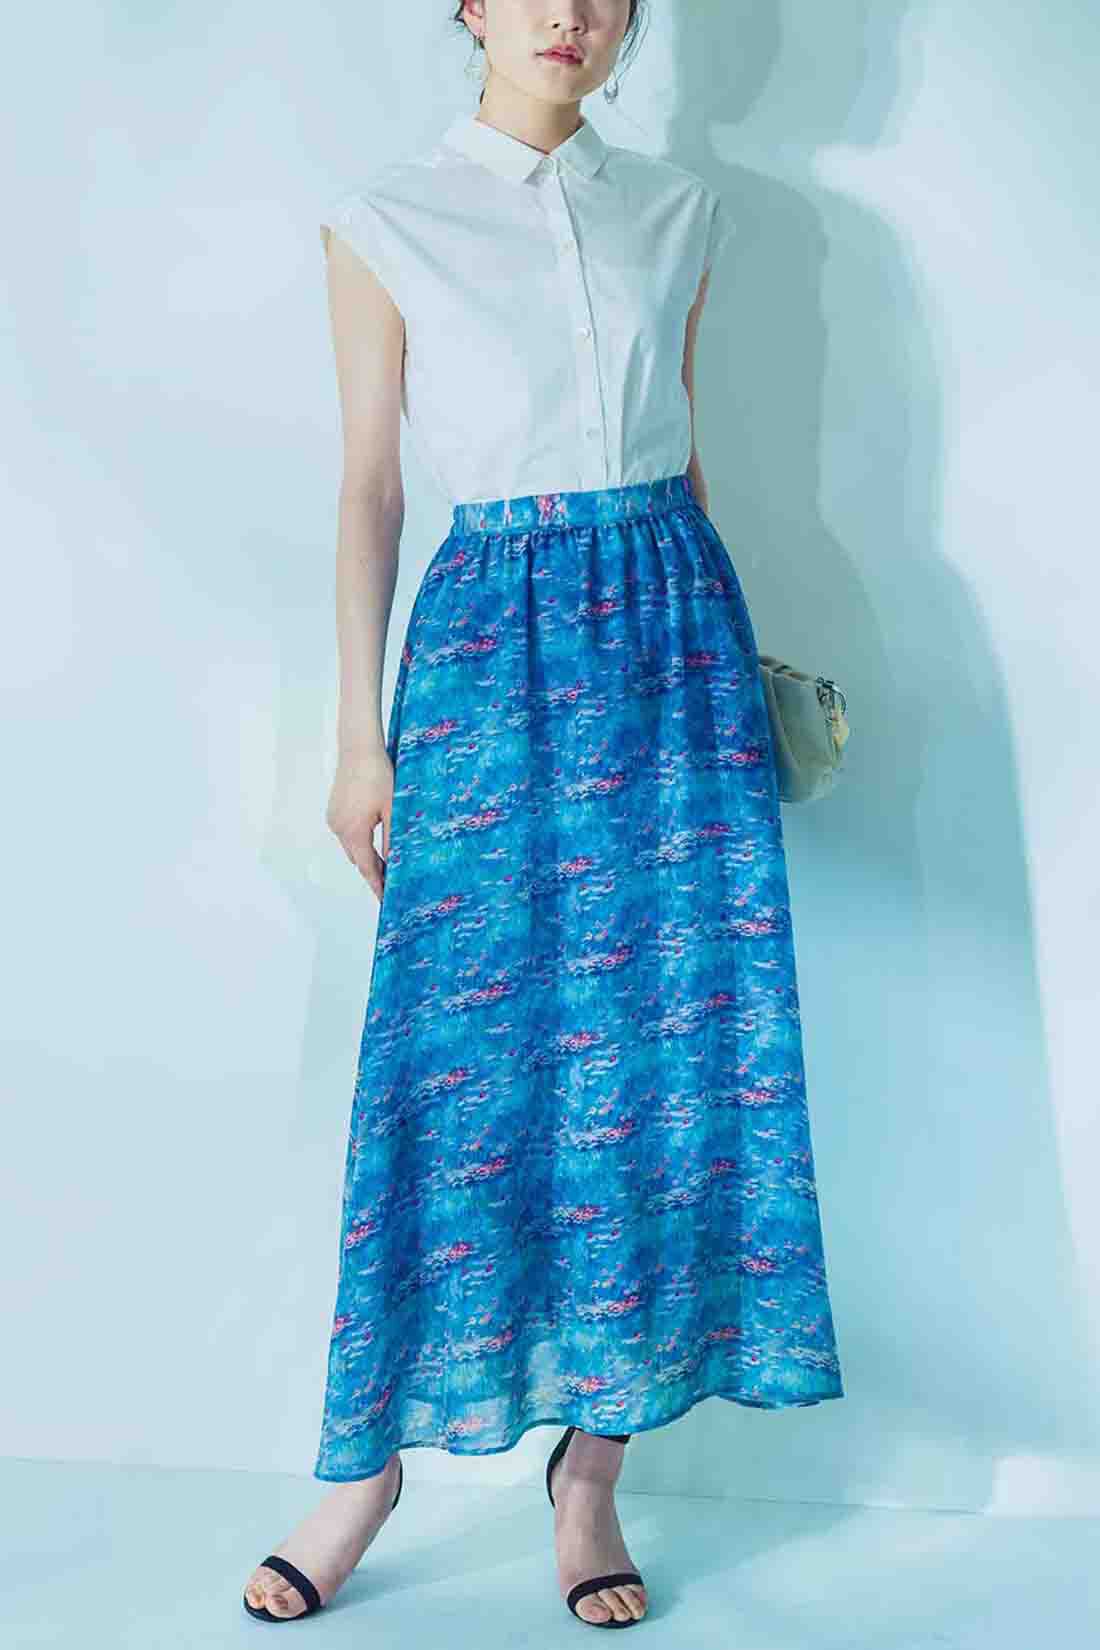 IEDIT|IEDIT[イディット]　モネの睡蓮をまとうシフォンスカート〈ブルー〉|※着用イメージです。お届けするカラーとは異なります。